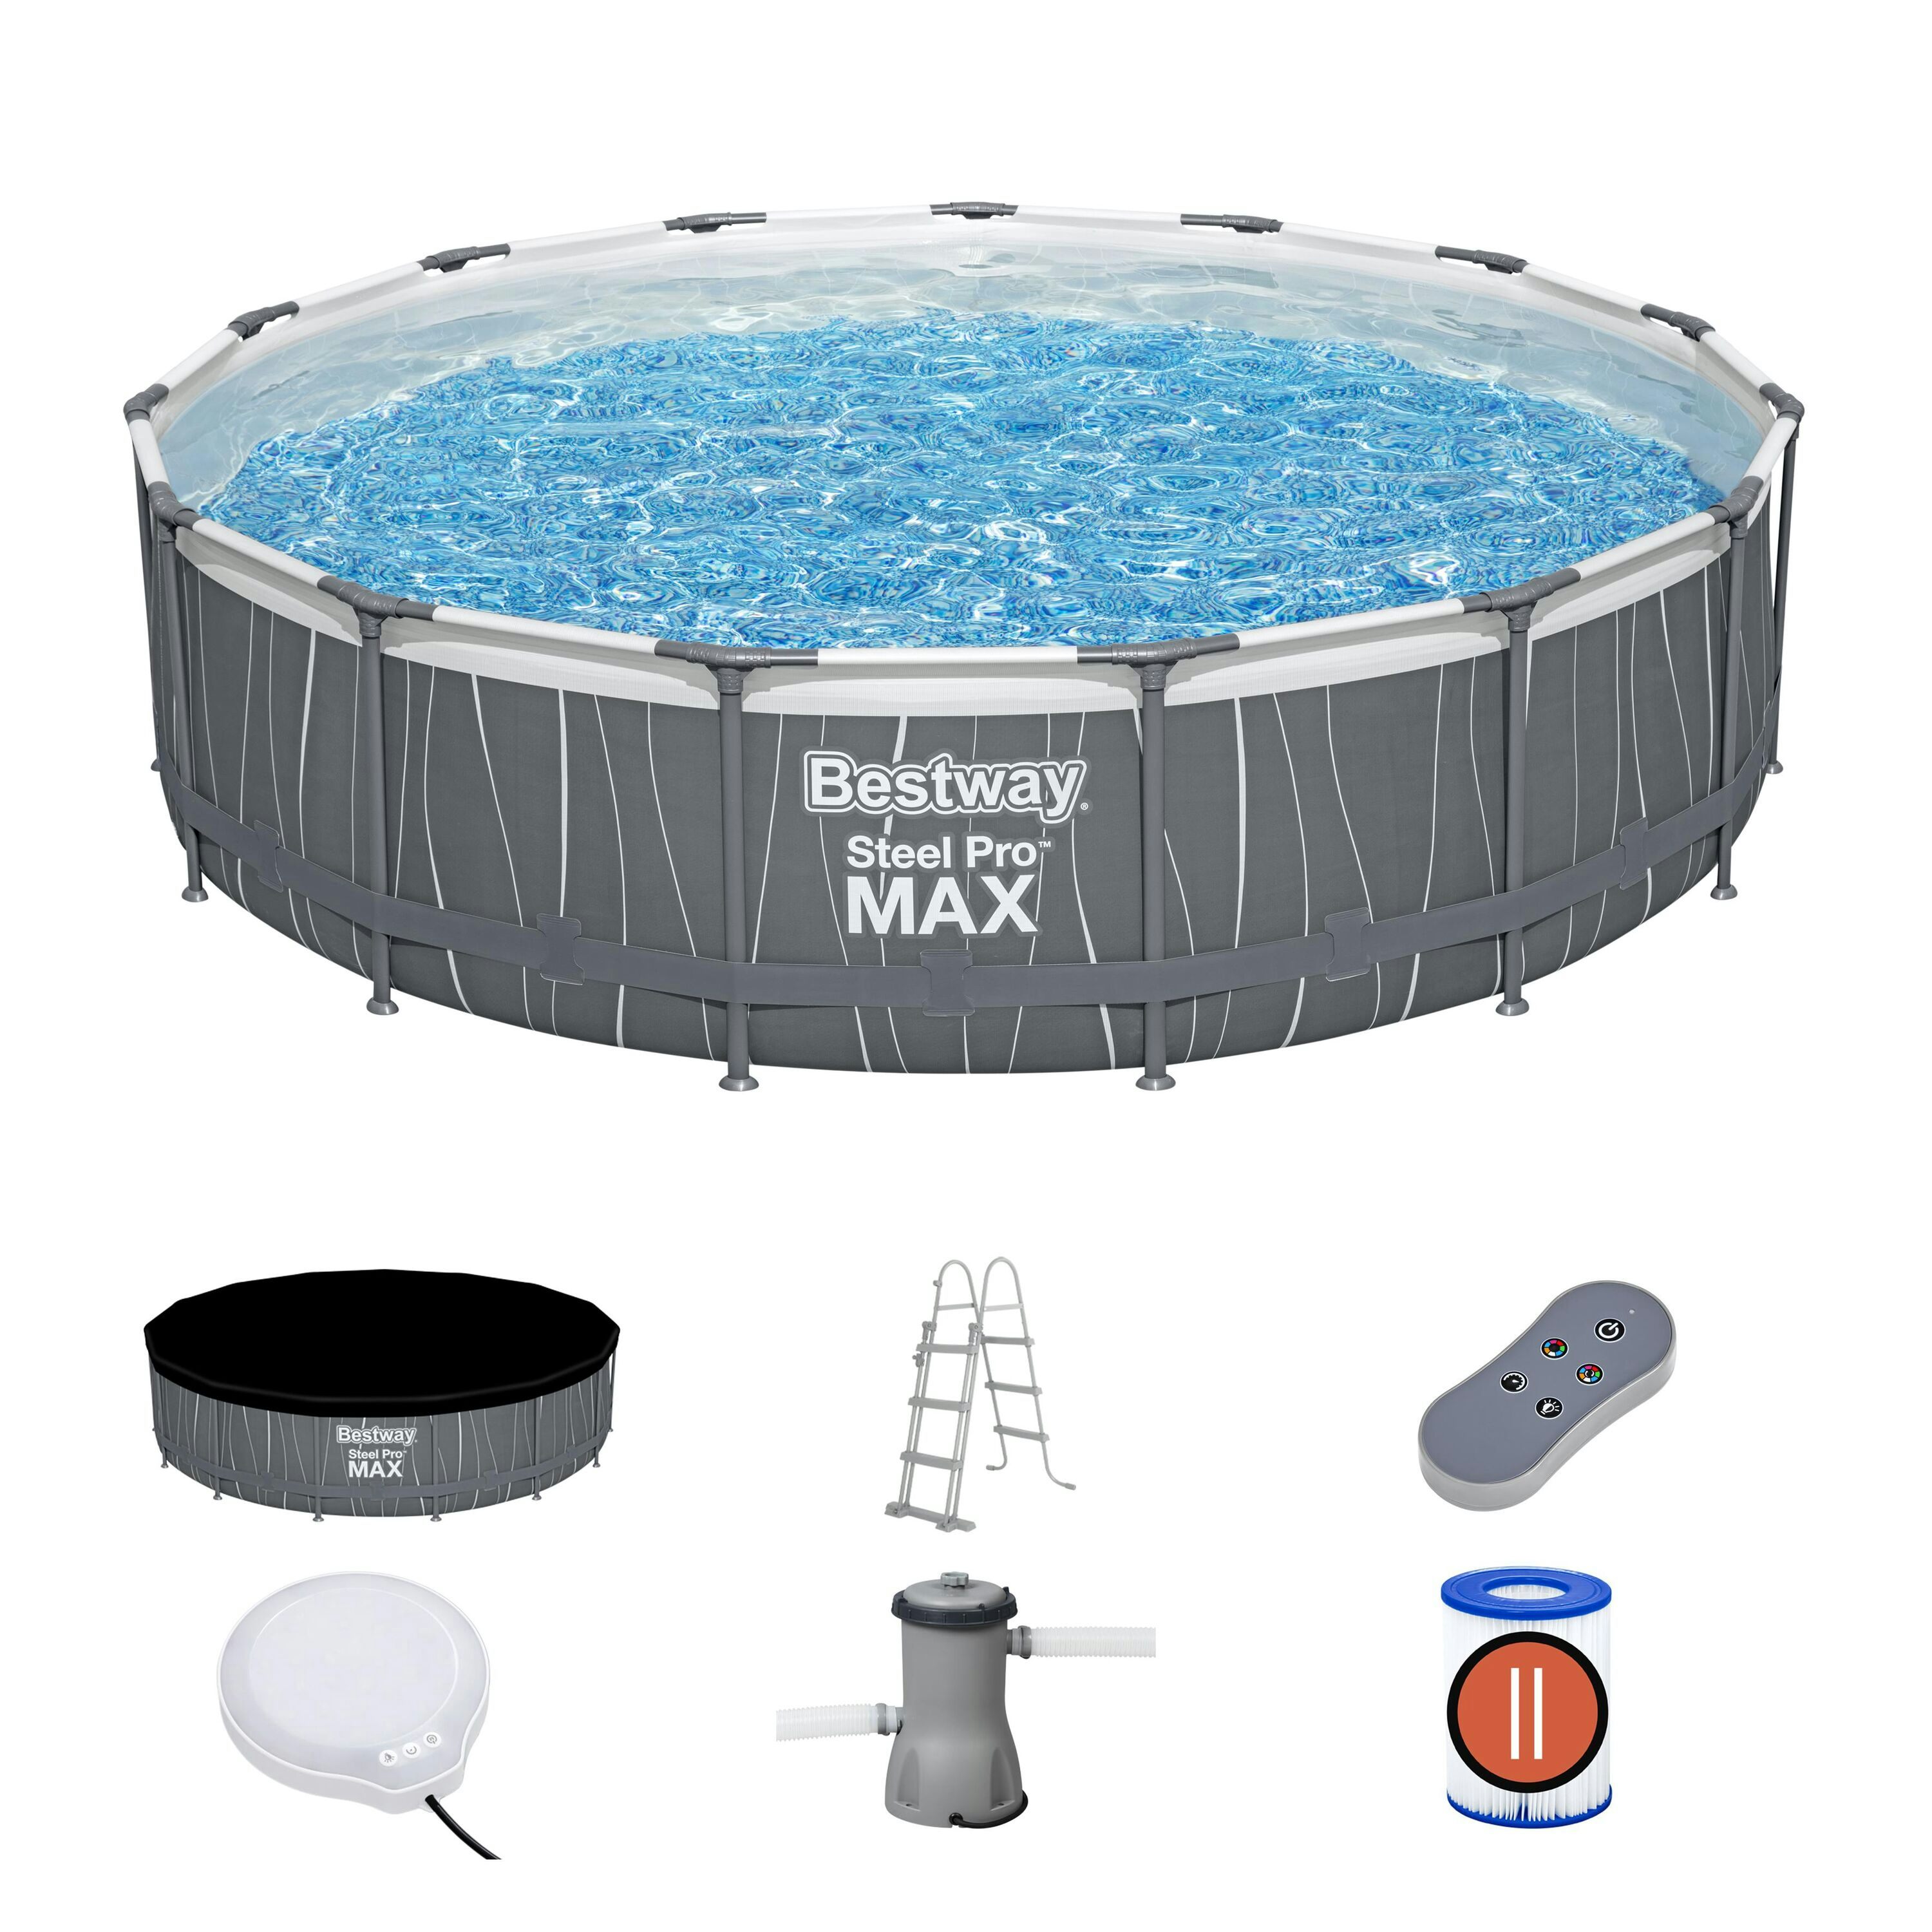 Bovengronds zwembad Set Steel Pro MAX rond bovengronds zwembad van 457x107 cm Bestway 1